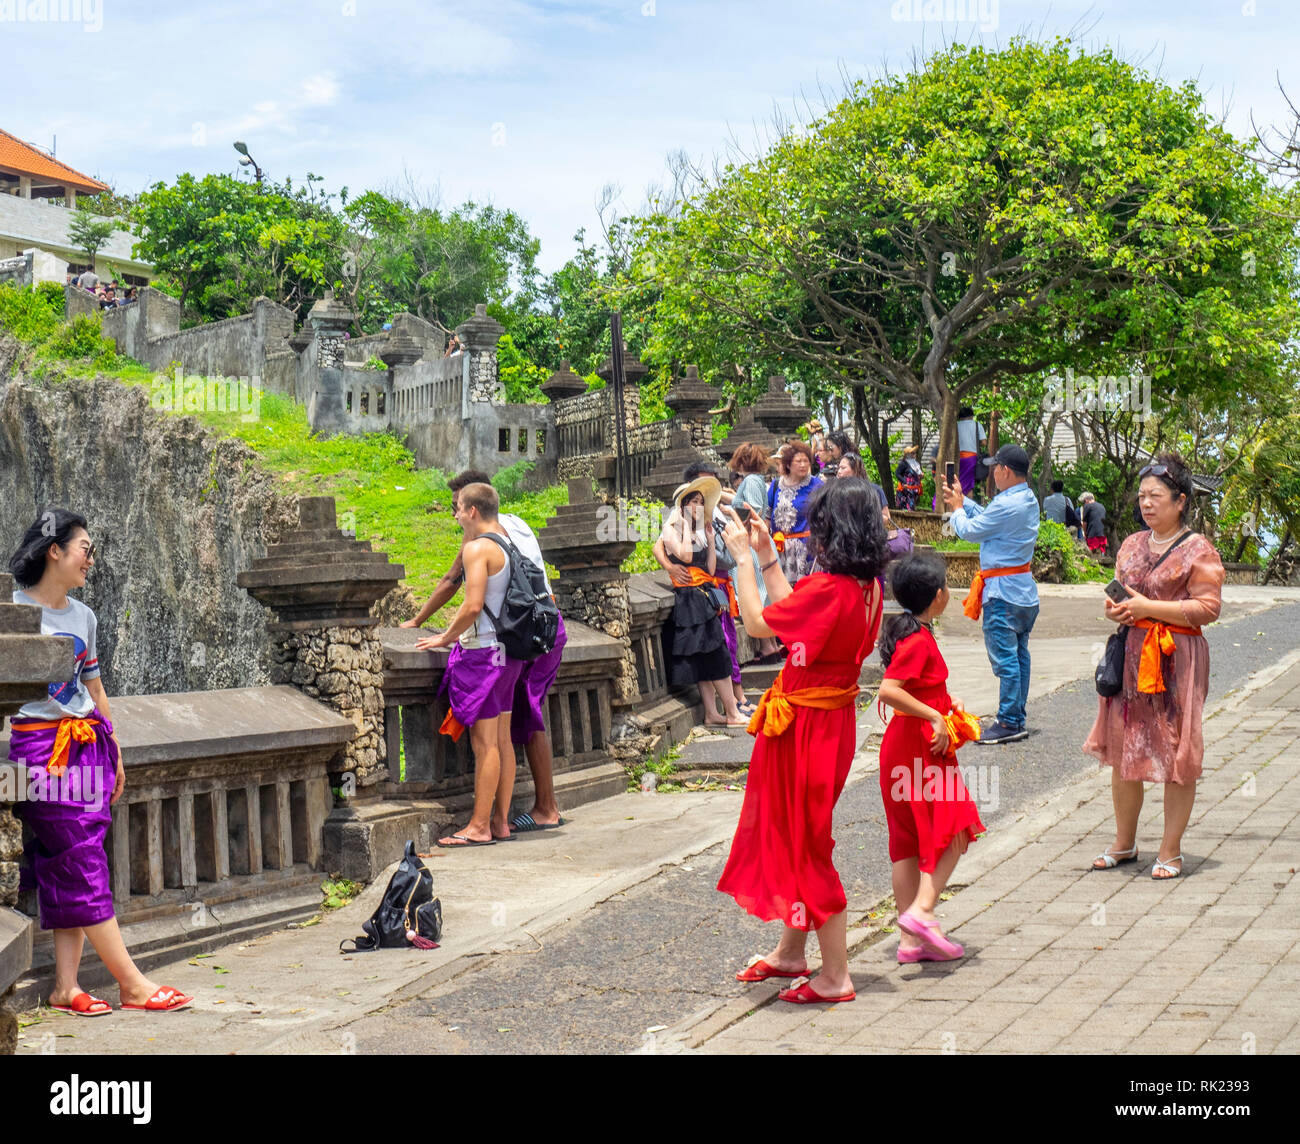 Chinese tourists wearing purple sarongs visiting Uluwatu Temple Bali  Indonesia Stock Photo - Alamy